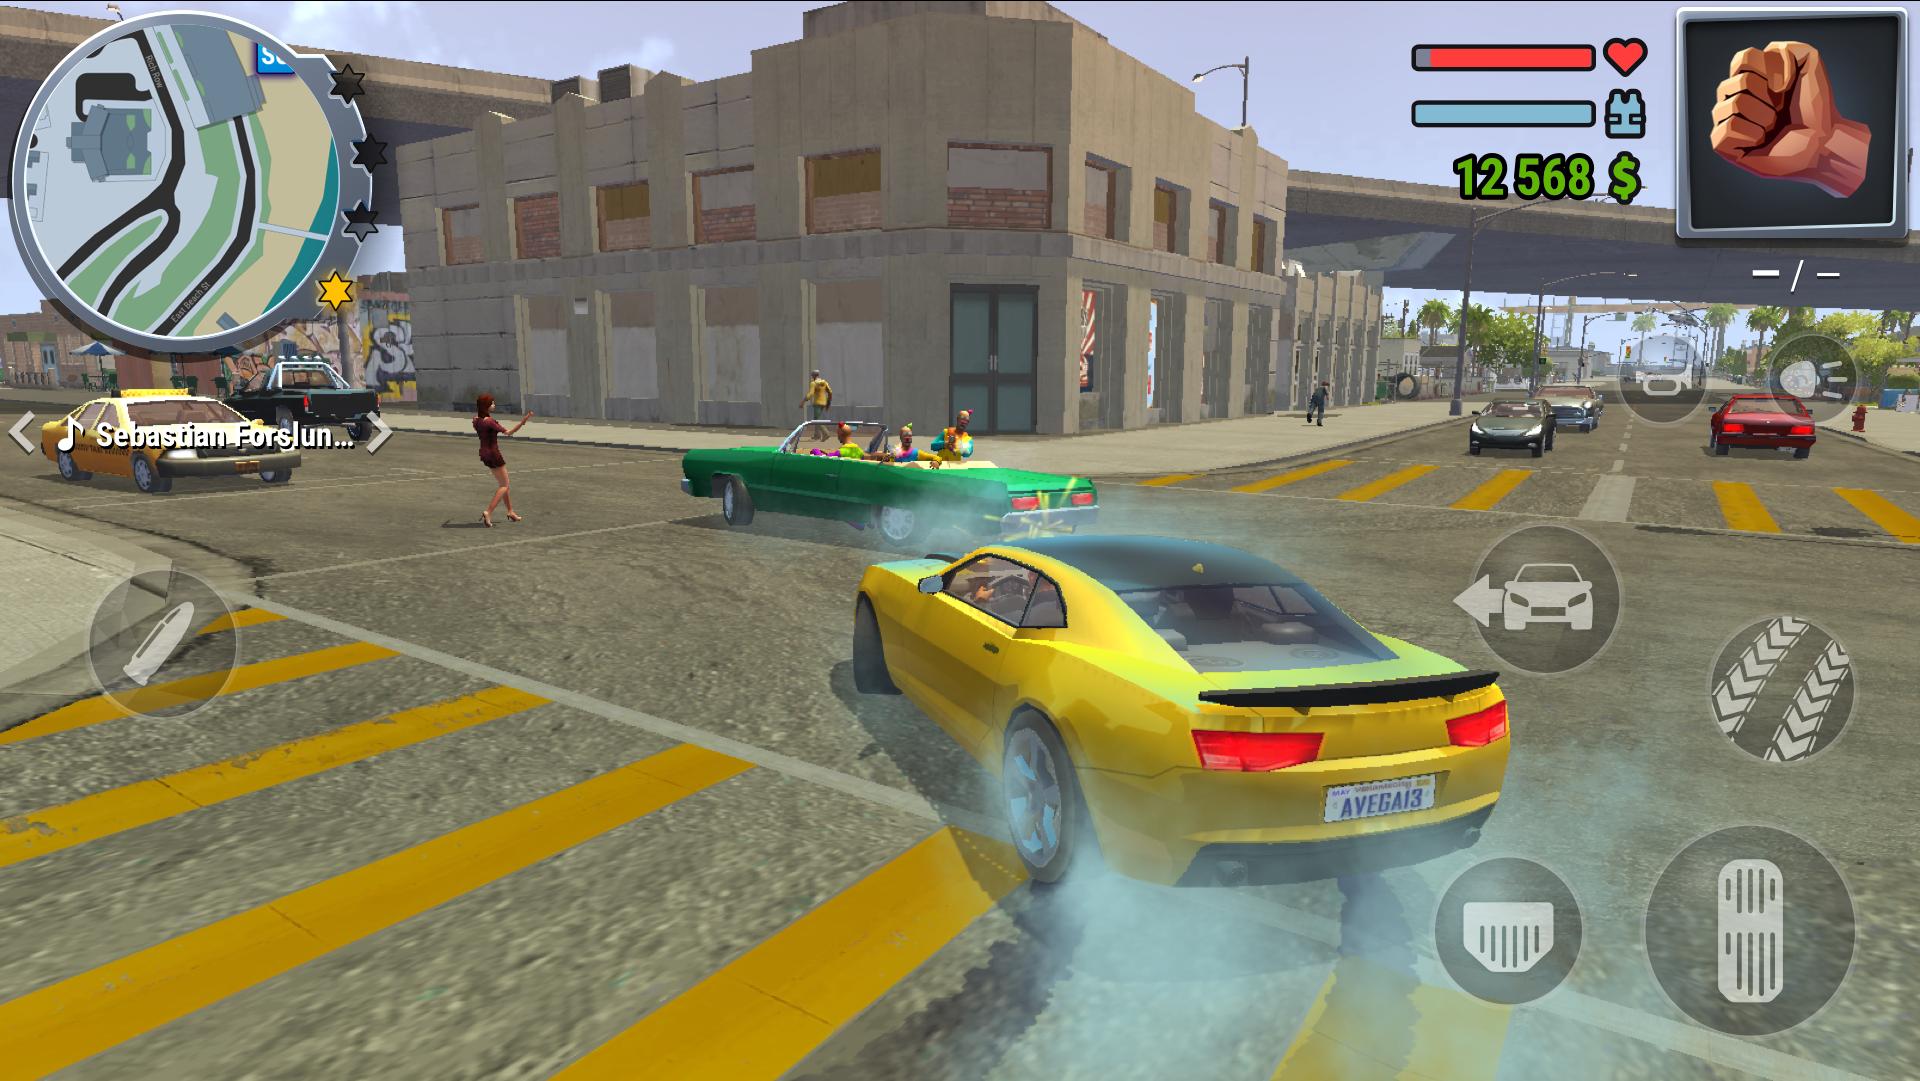 Gangs Town Story action open-world shooter 0.12.3b Screenshot 15